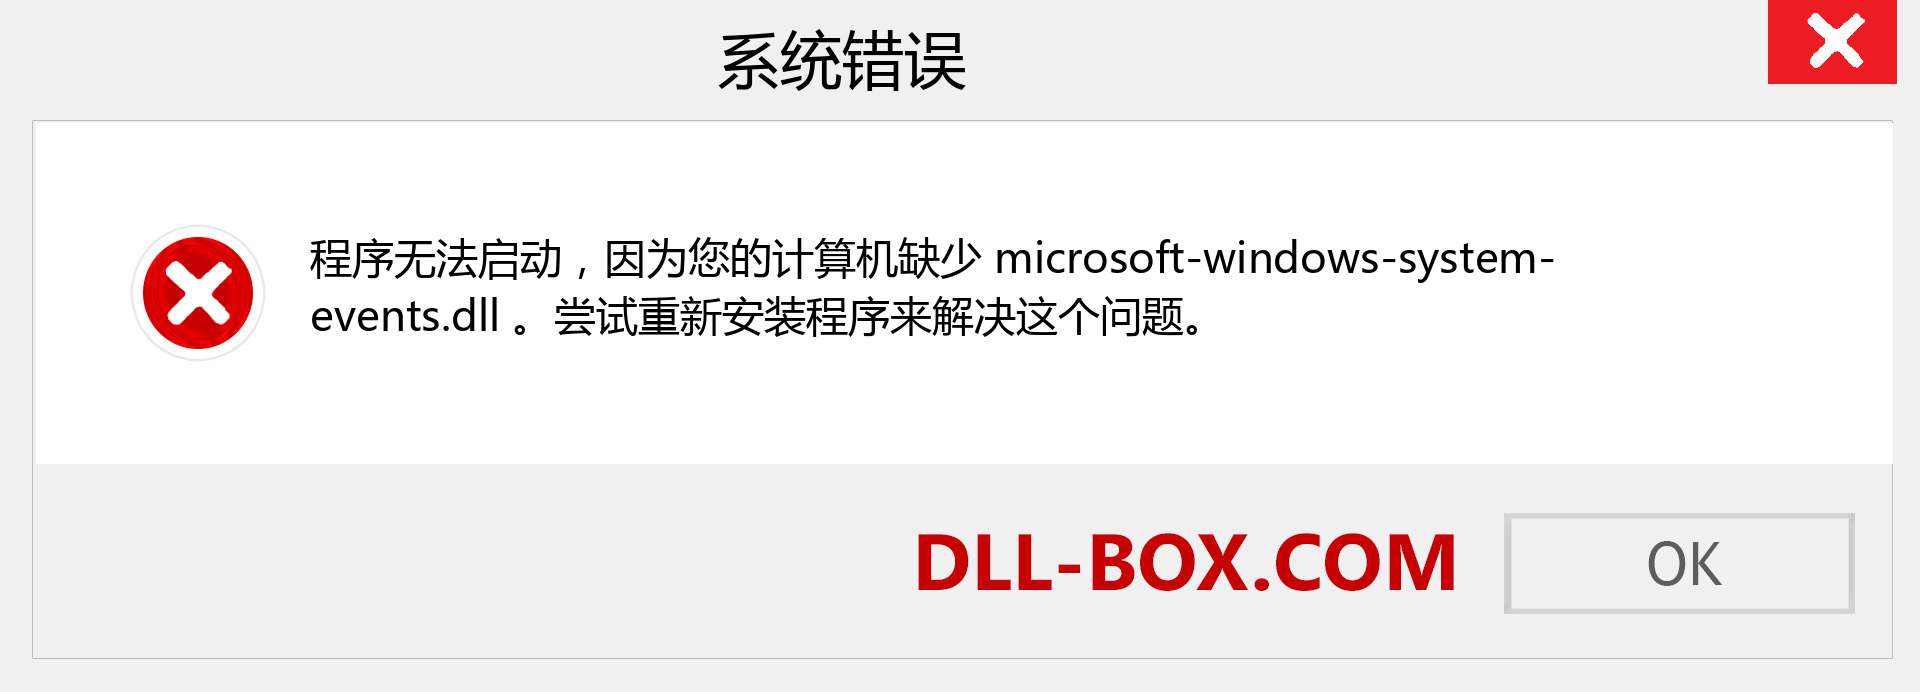 microsoft-windows-system-events.dll 文件丢失？。 适用于 Windows 7、8、10 的下载 - 修复 Windows、照片、图像上的 microsoft-windows-system-events dll 丢失错误